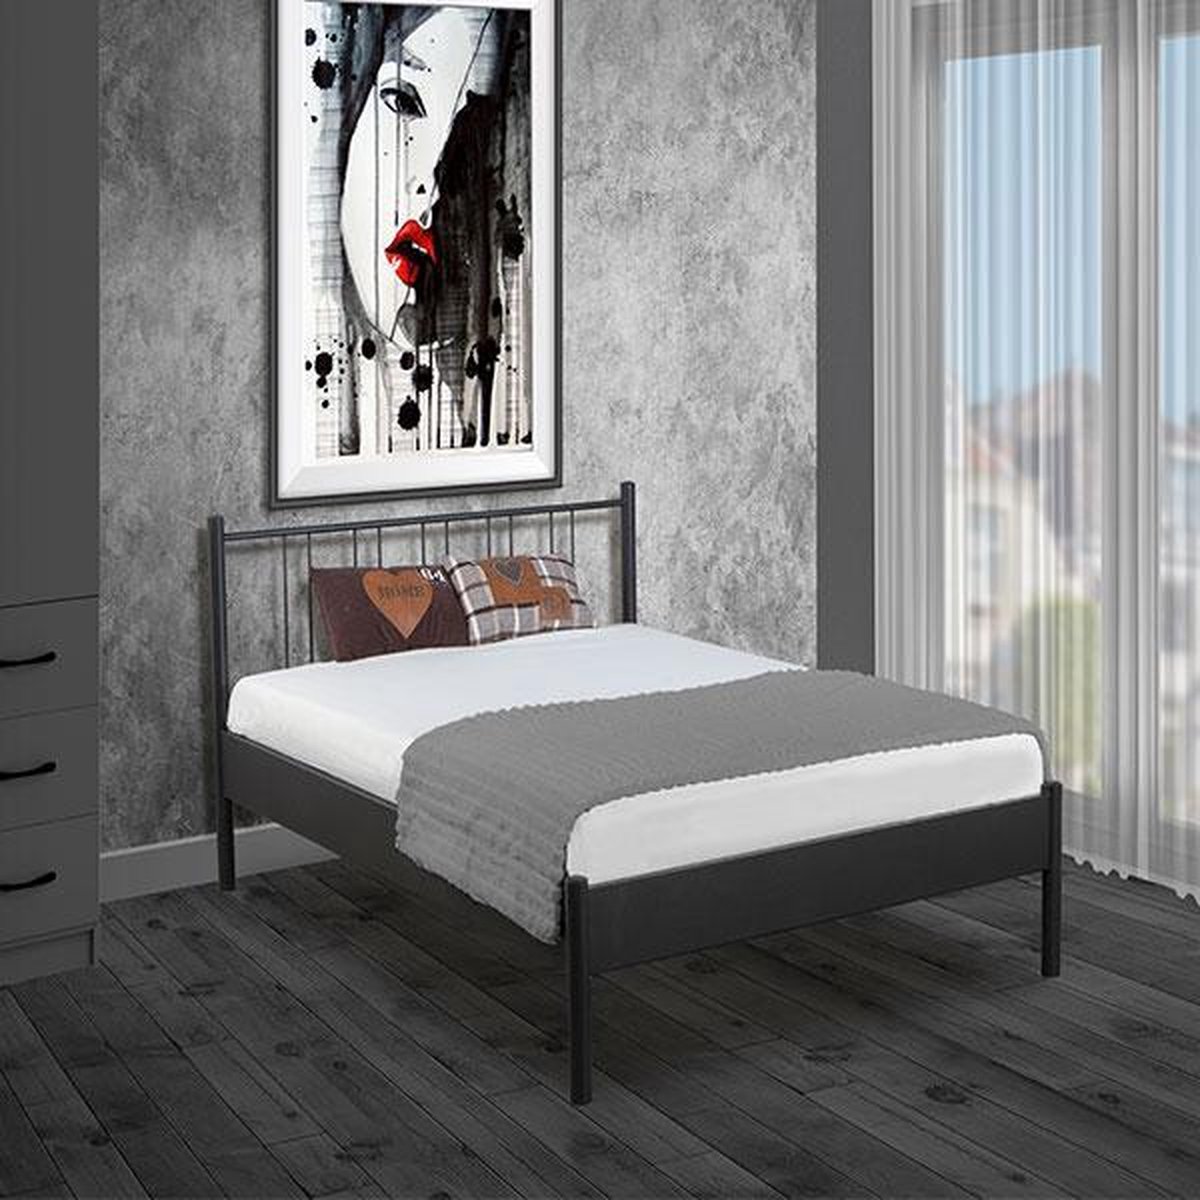 Bed Box Holland Metaal bed Moon zilver 90x200 -lattenbodem matras eenpersoons Design